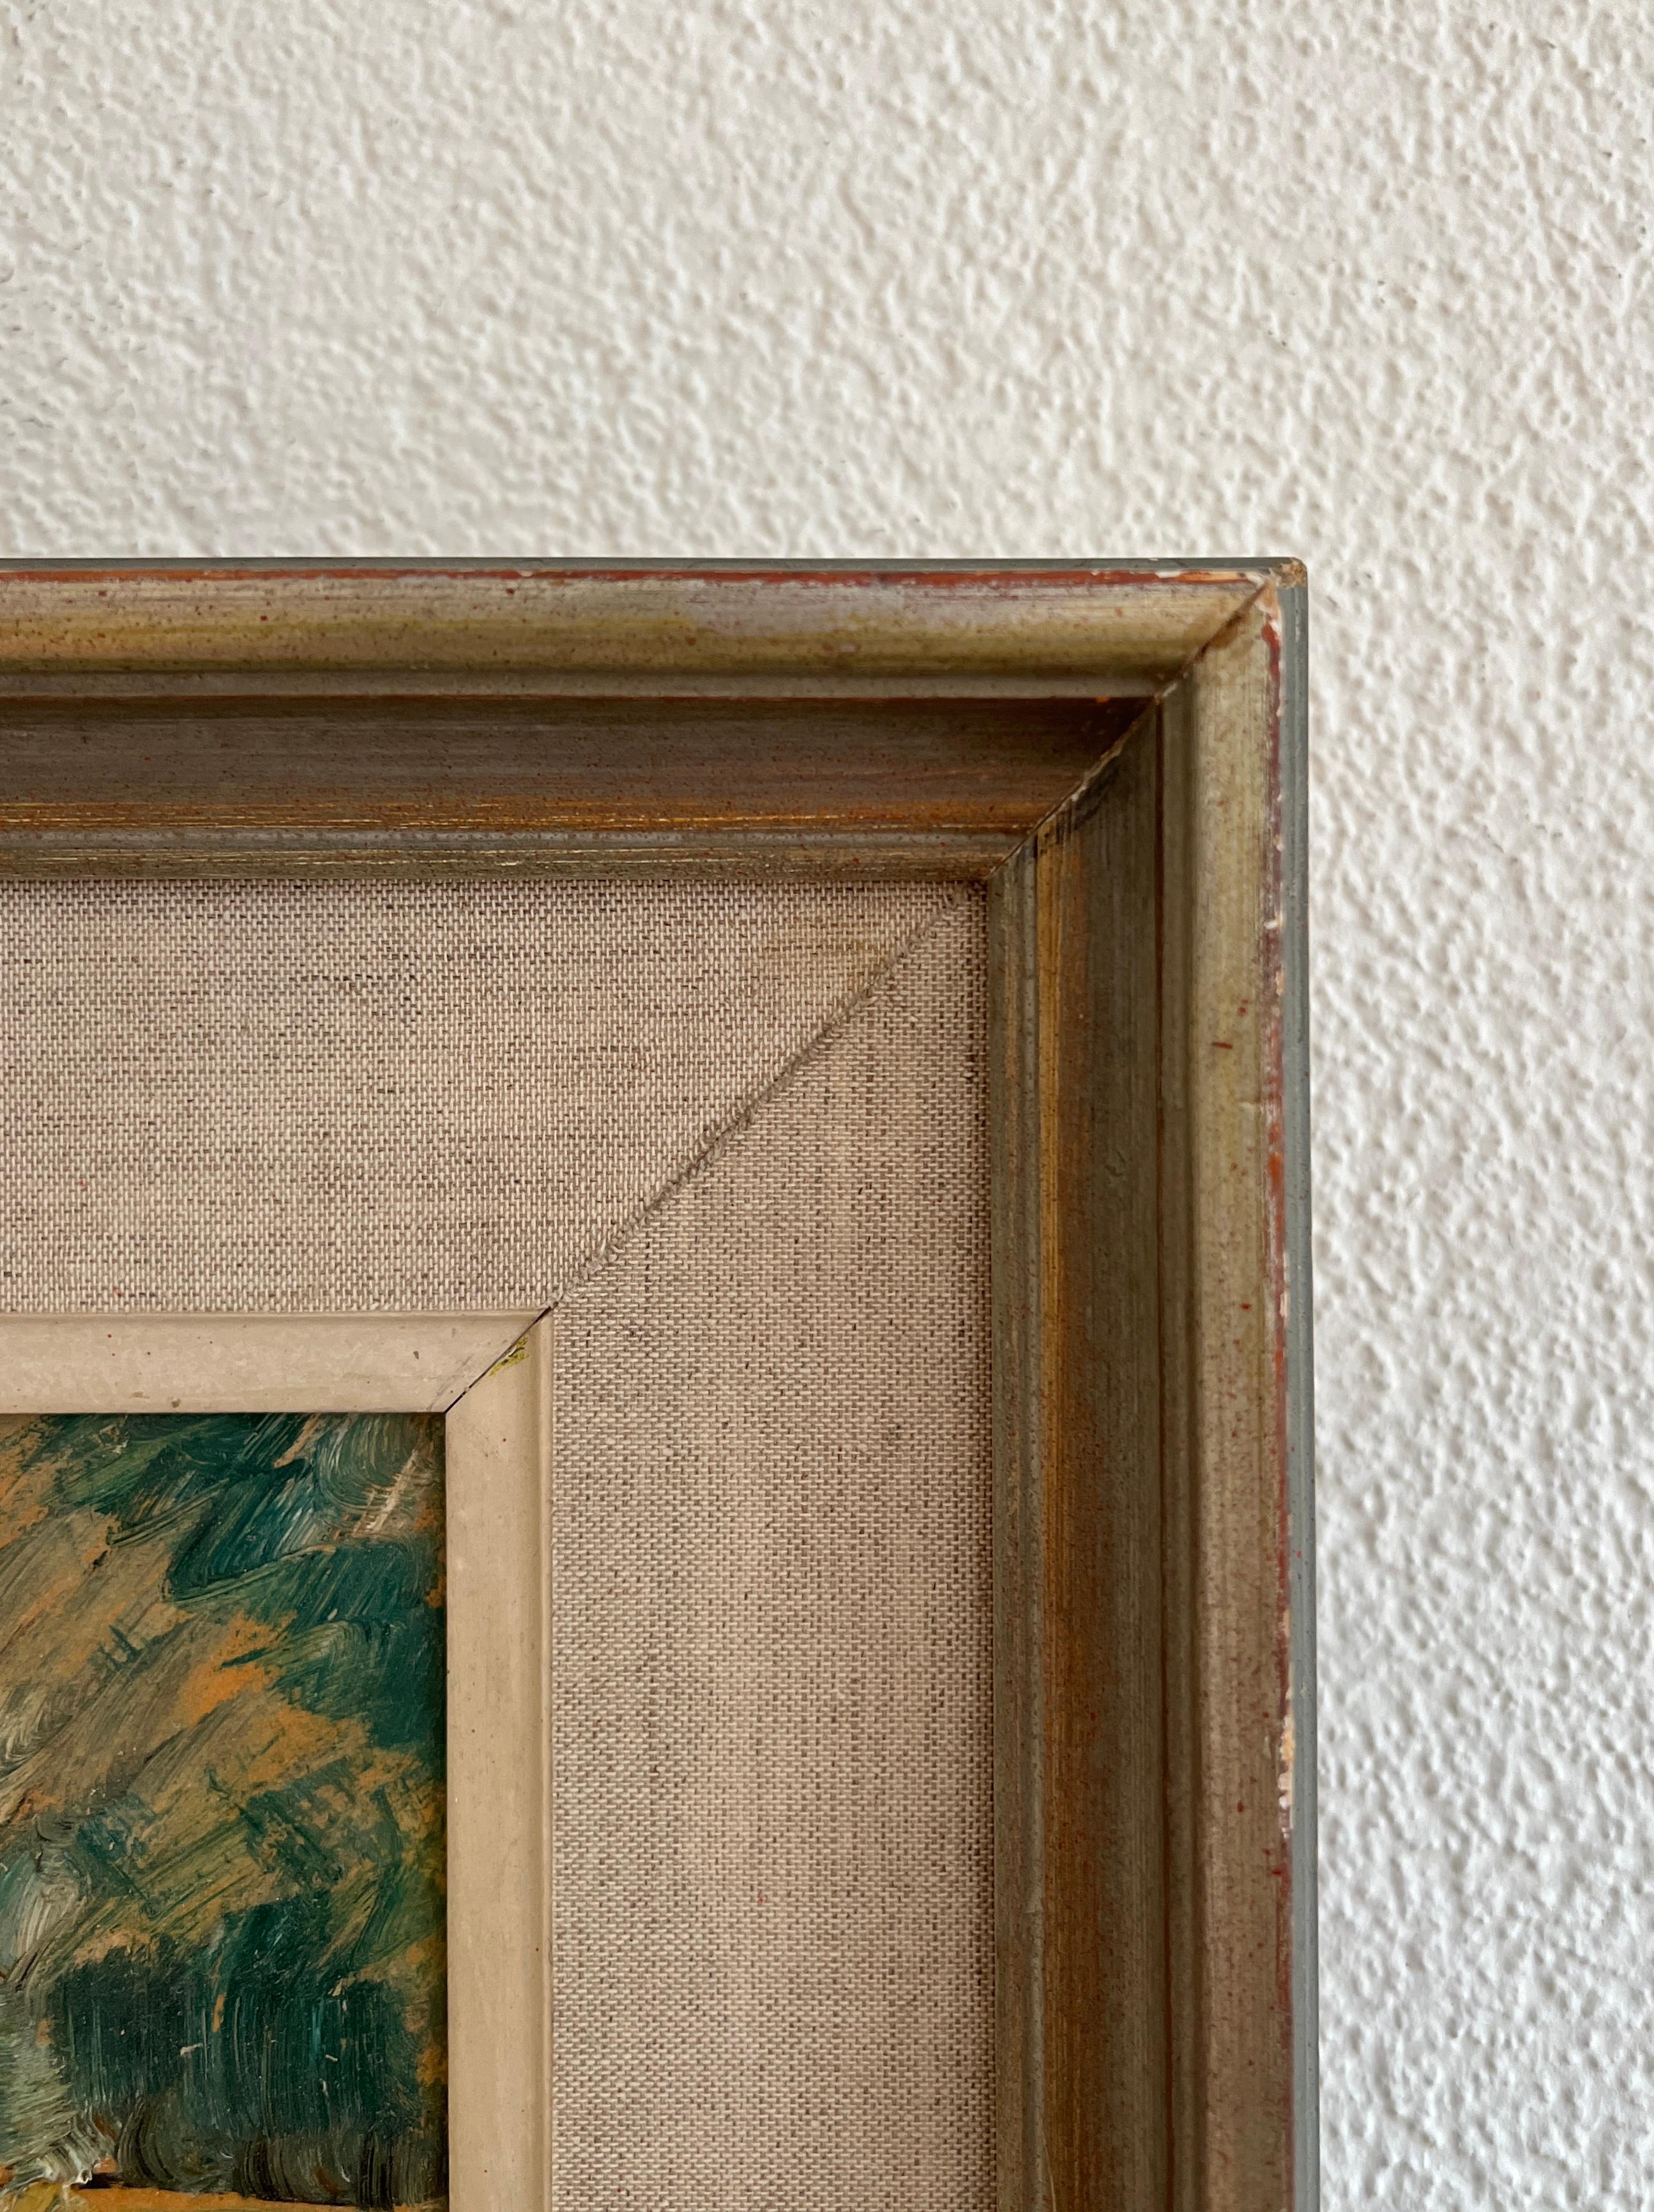 Work on canvas
Golden wooden frame
47.7 x 34.5 x 5 cm